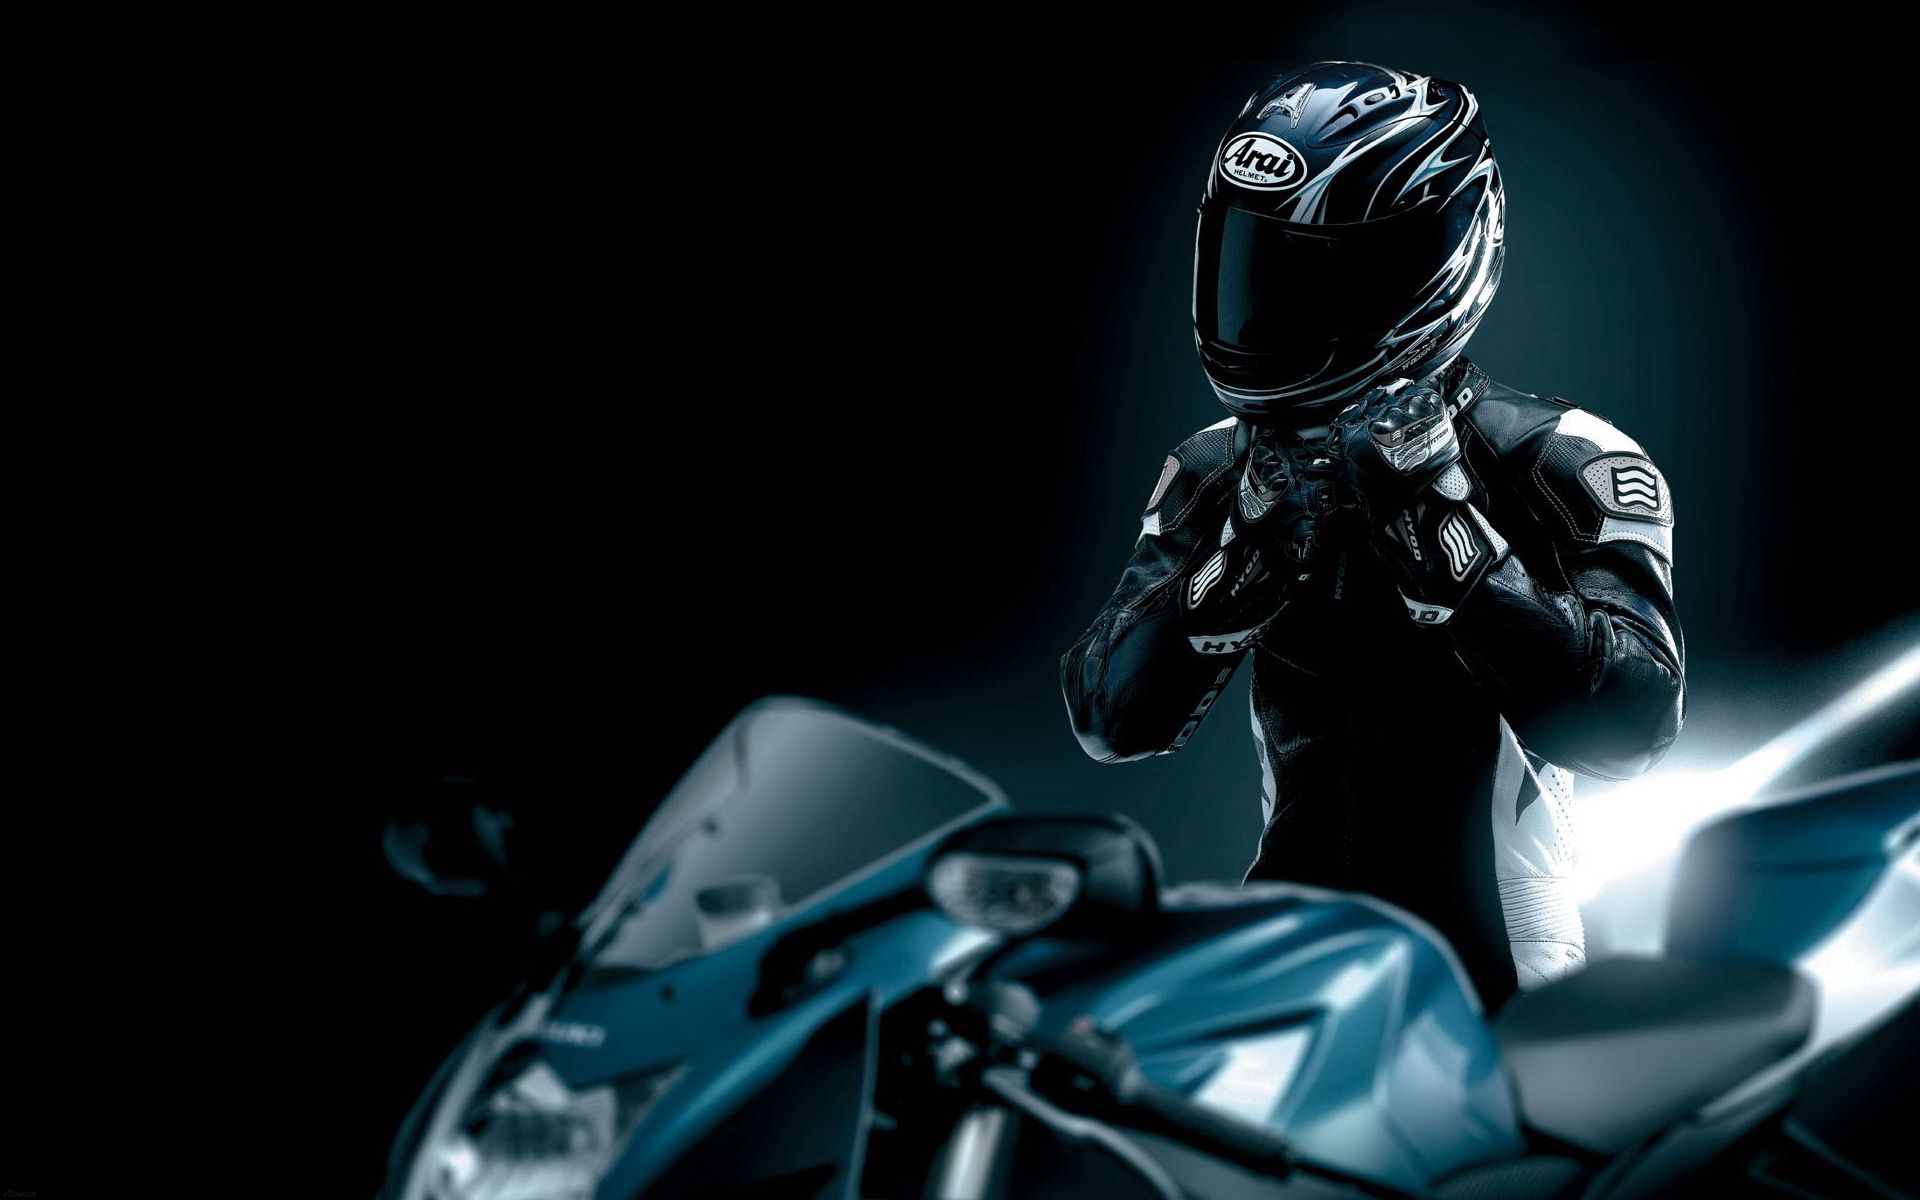 black, motorcycle, motorcycles, helmet, racer FHD, 4K, UHD